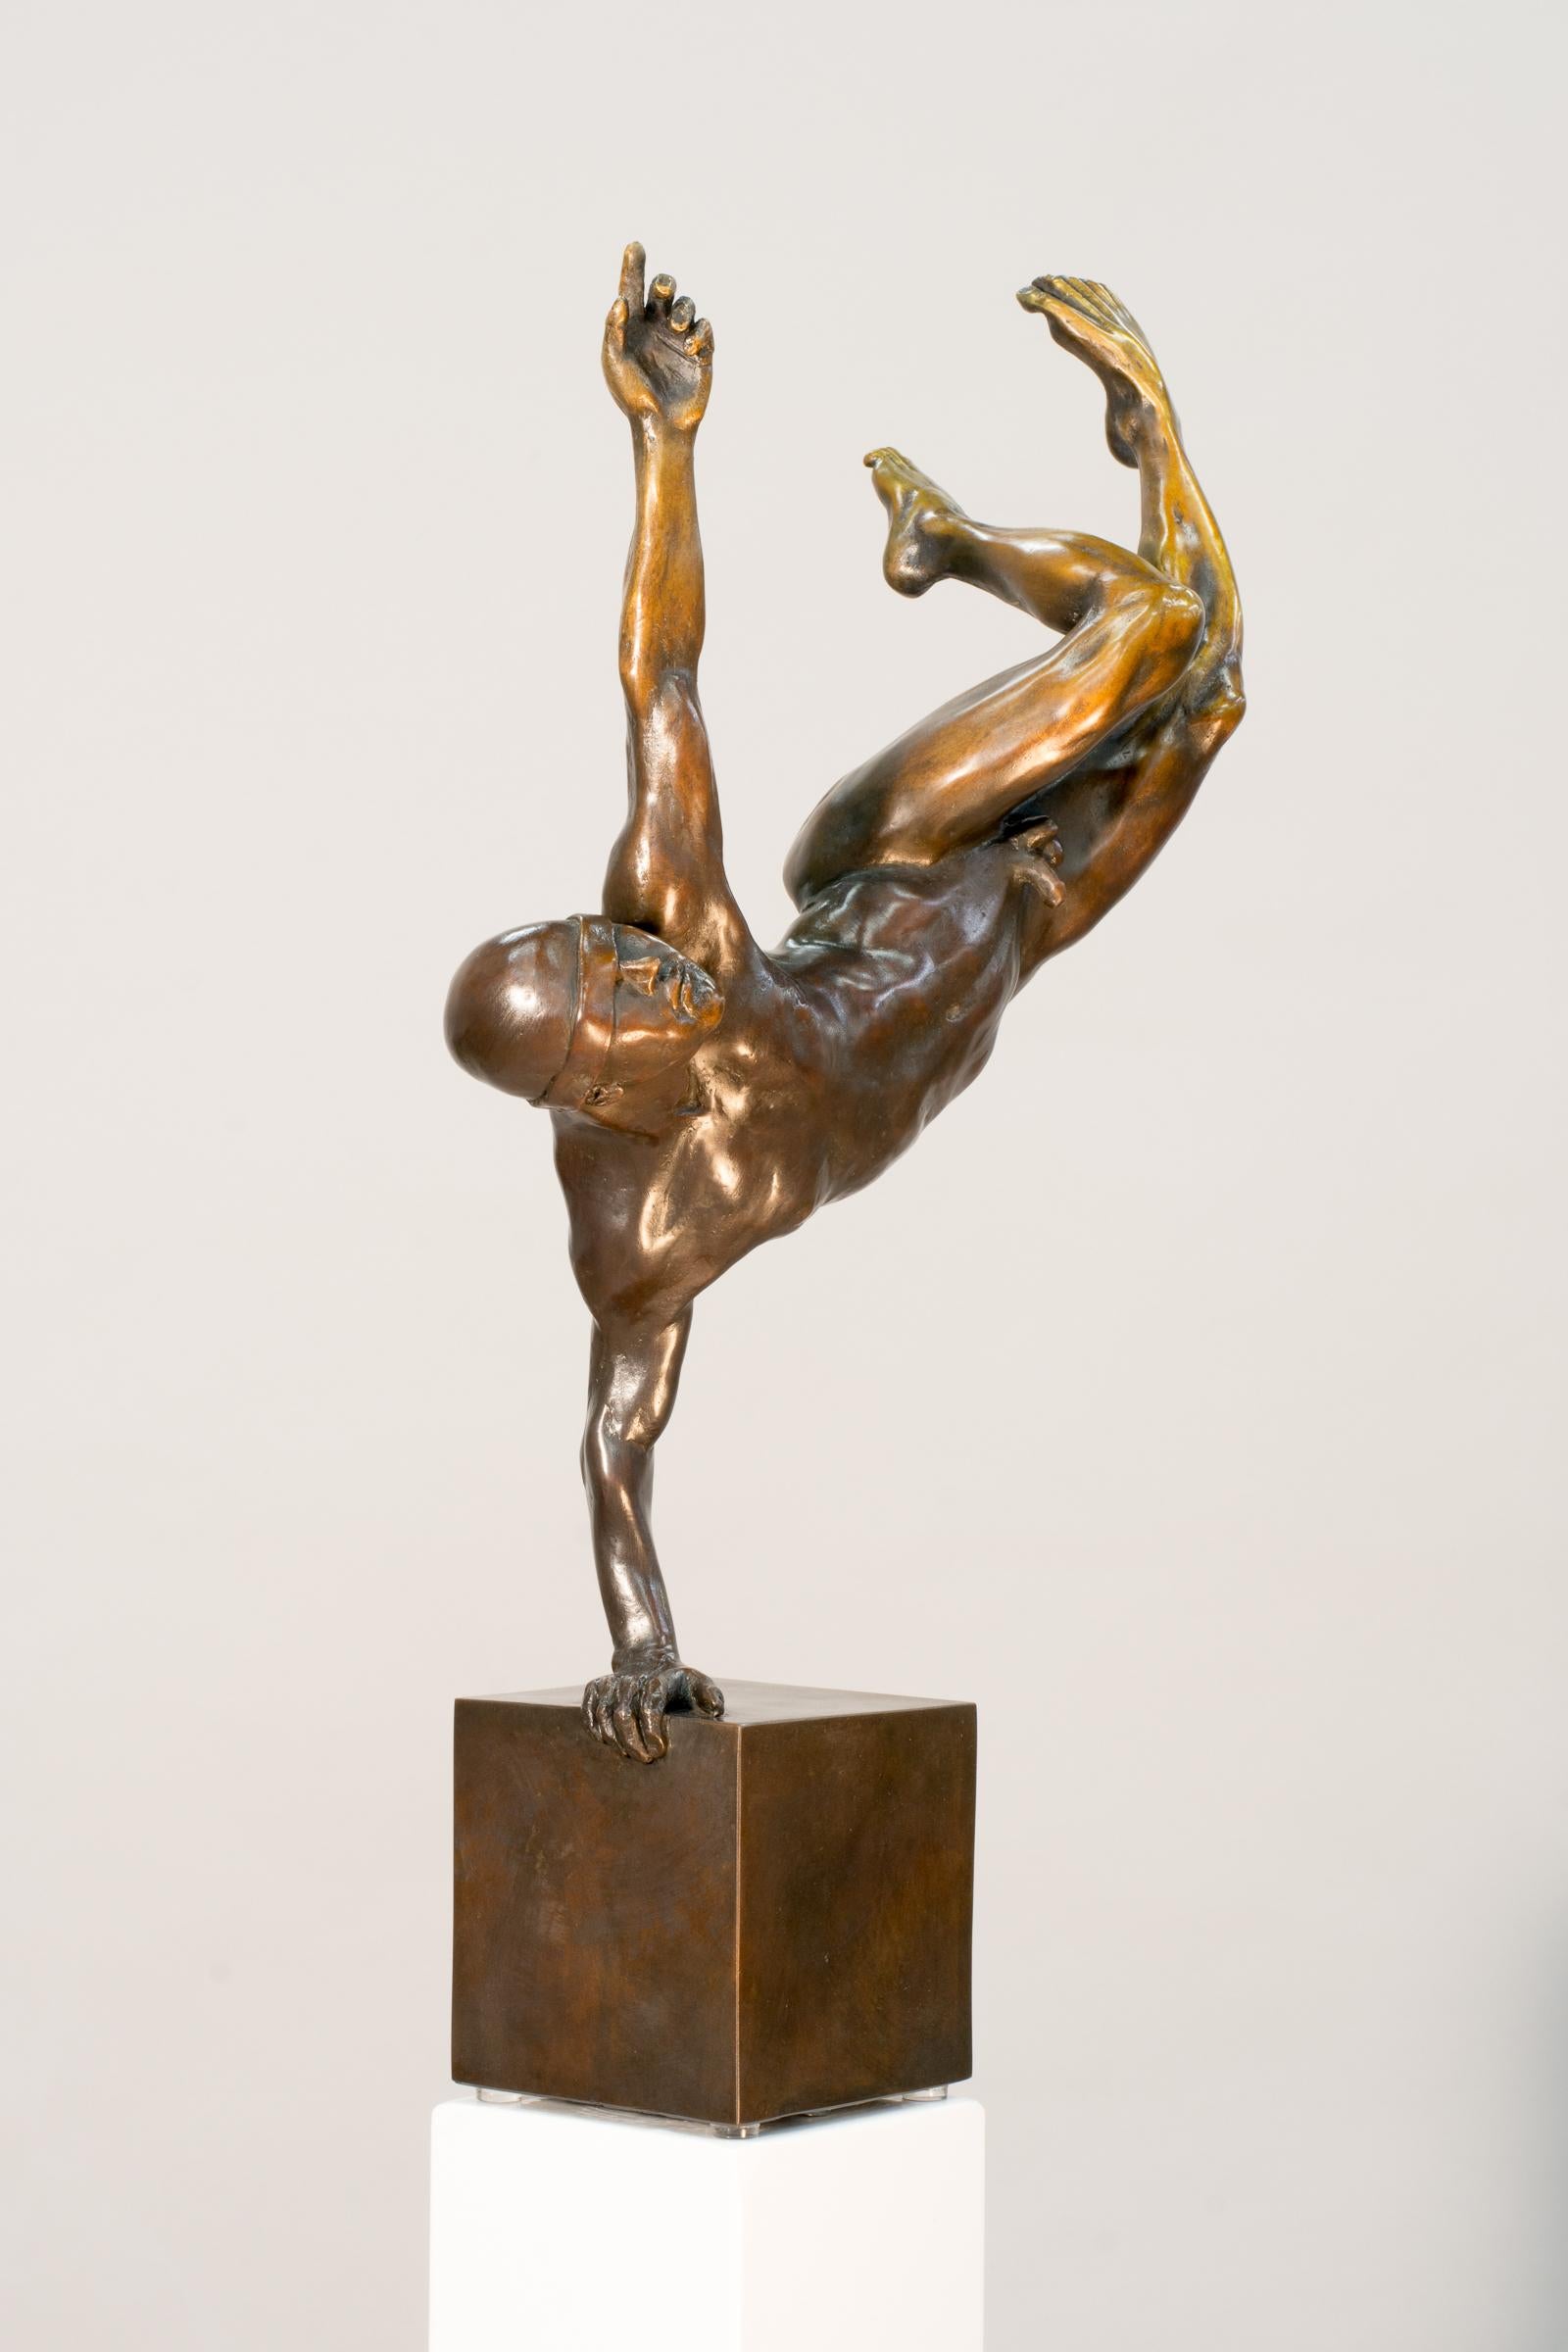 À la fois expressif et élégant, William Hung crée des sculptures dynamiques qui explorent la condition humaine. Dans cette pièce intime, coulée dans un bronze riche, un athlète se tient en équilibre sur une main, son corps nu et en pleine forme